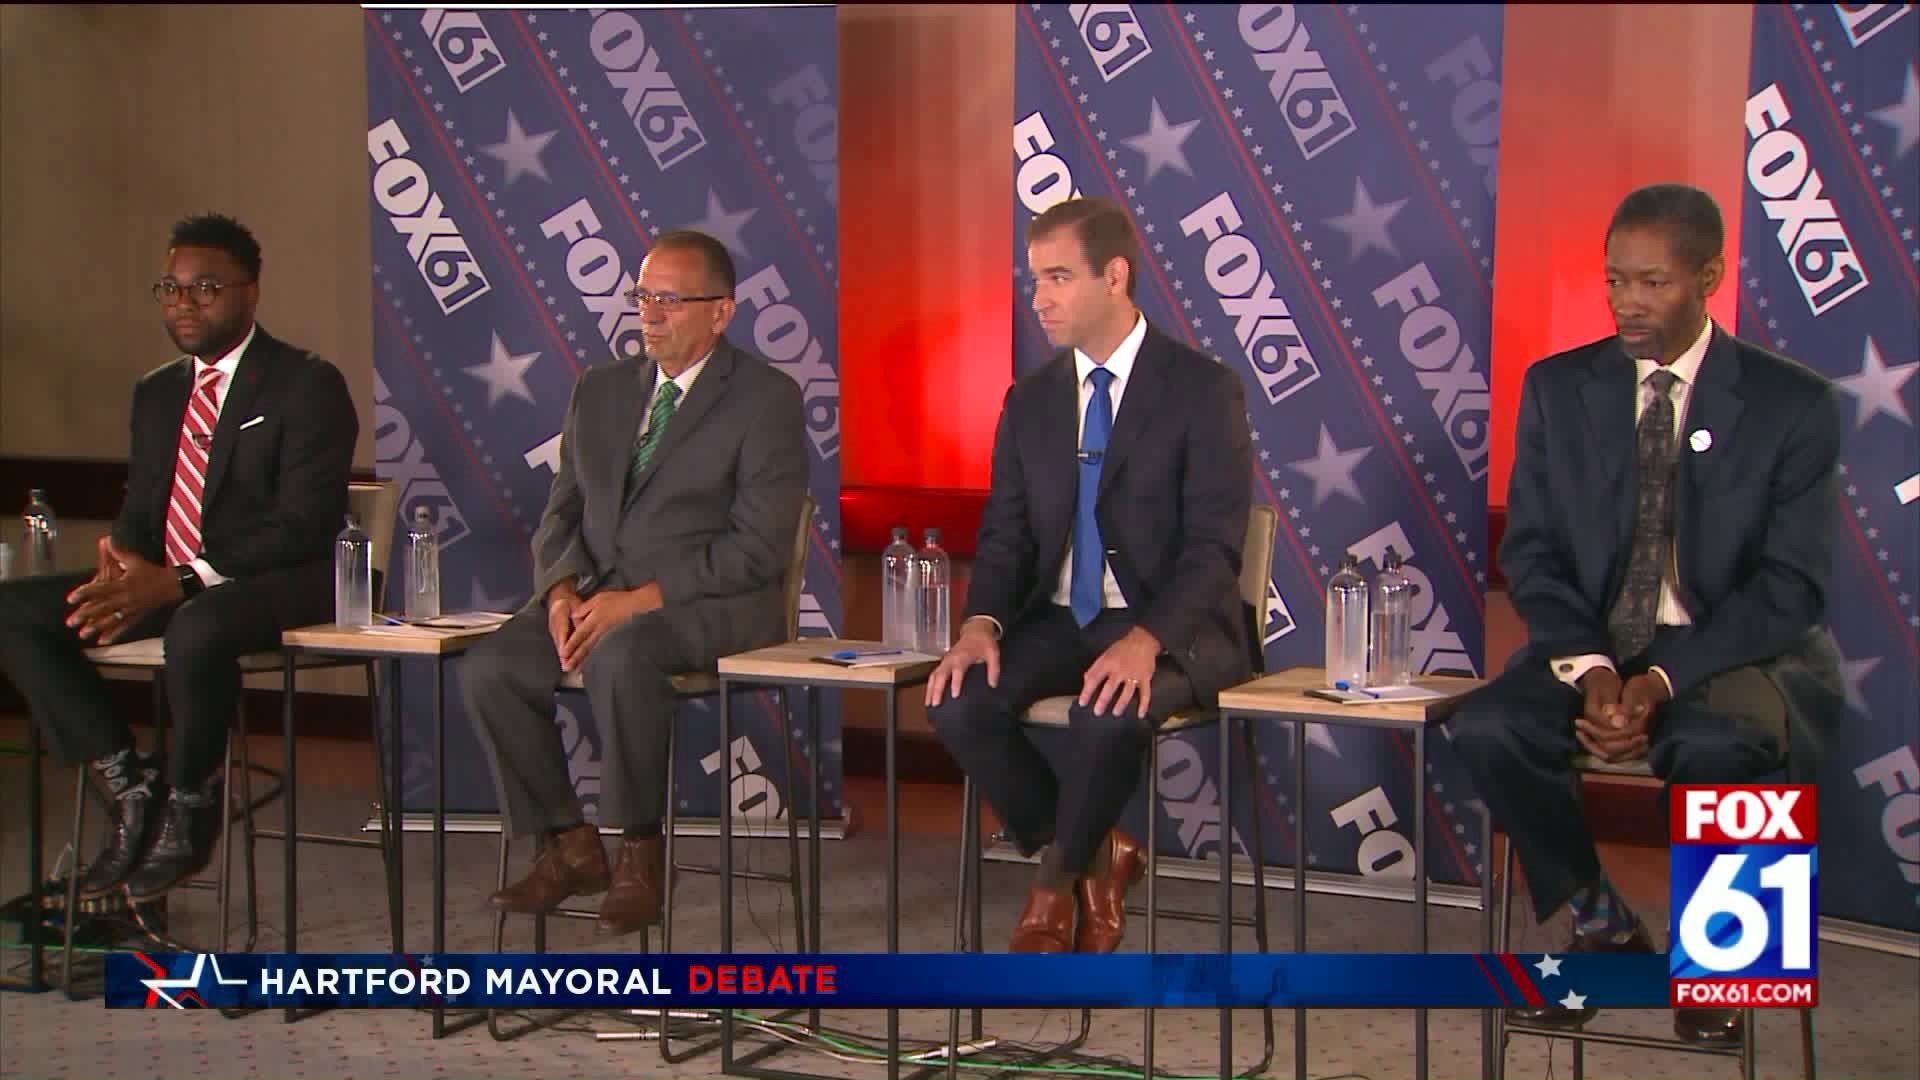 Hartford Mayoral Debate: Seeking higher office